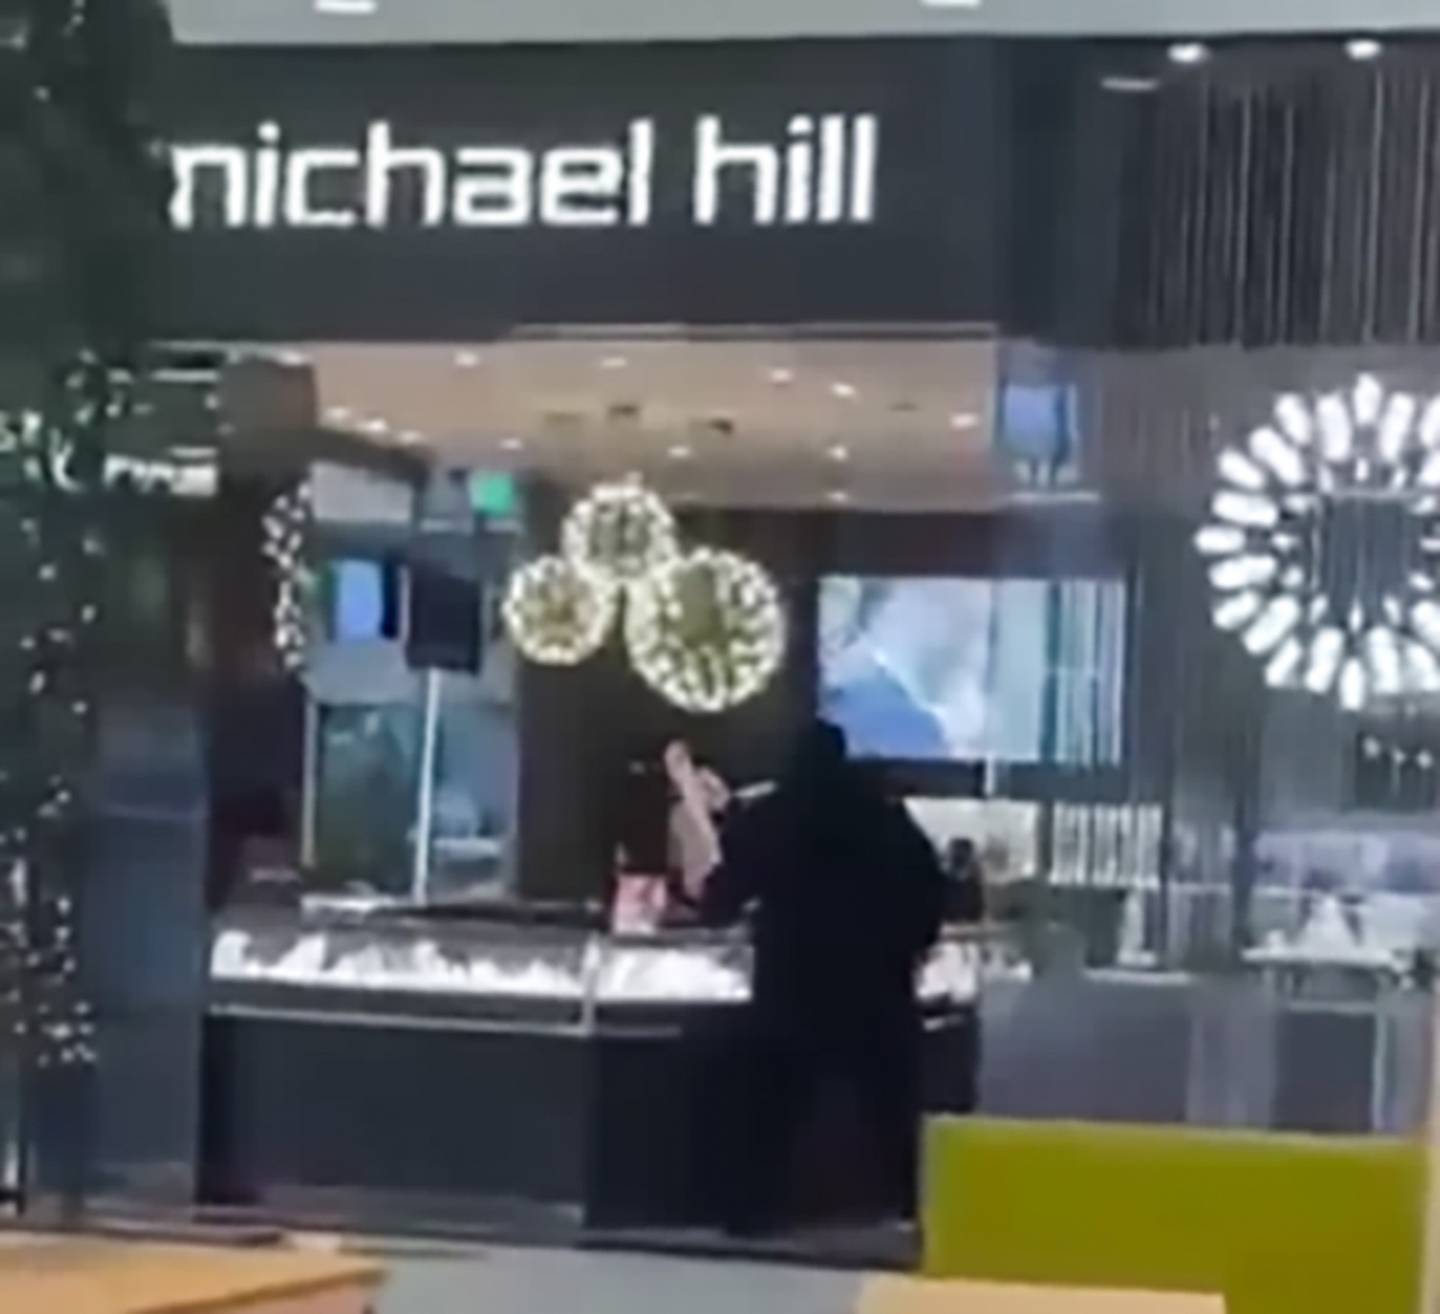 上周，有人在西奥克兰 Michael Hill 珠宝店偷胶卷时被抓获。 照片/提供